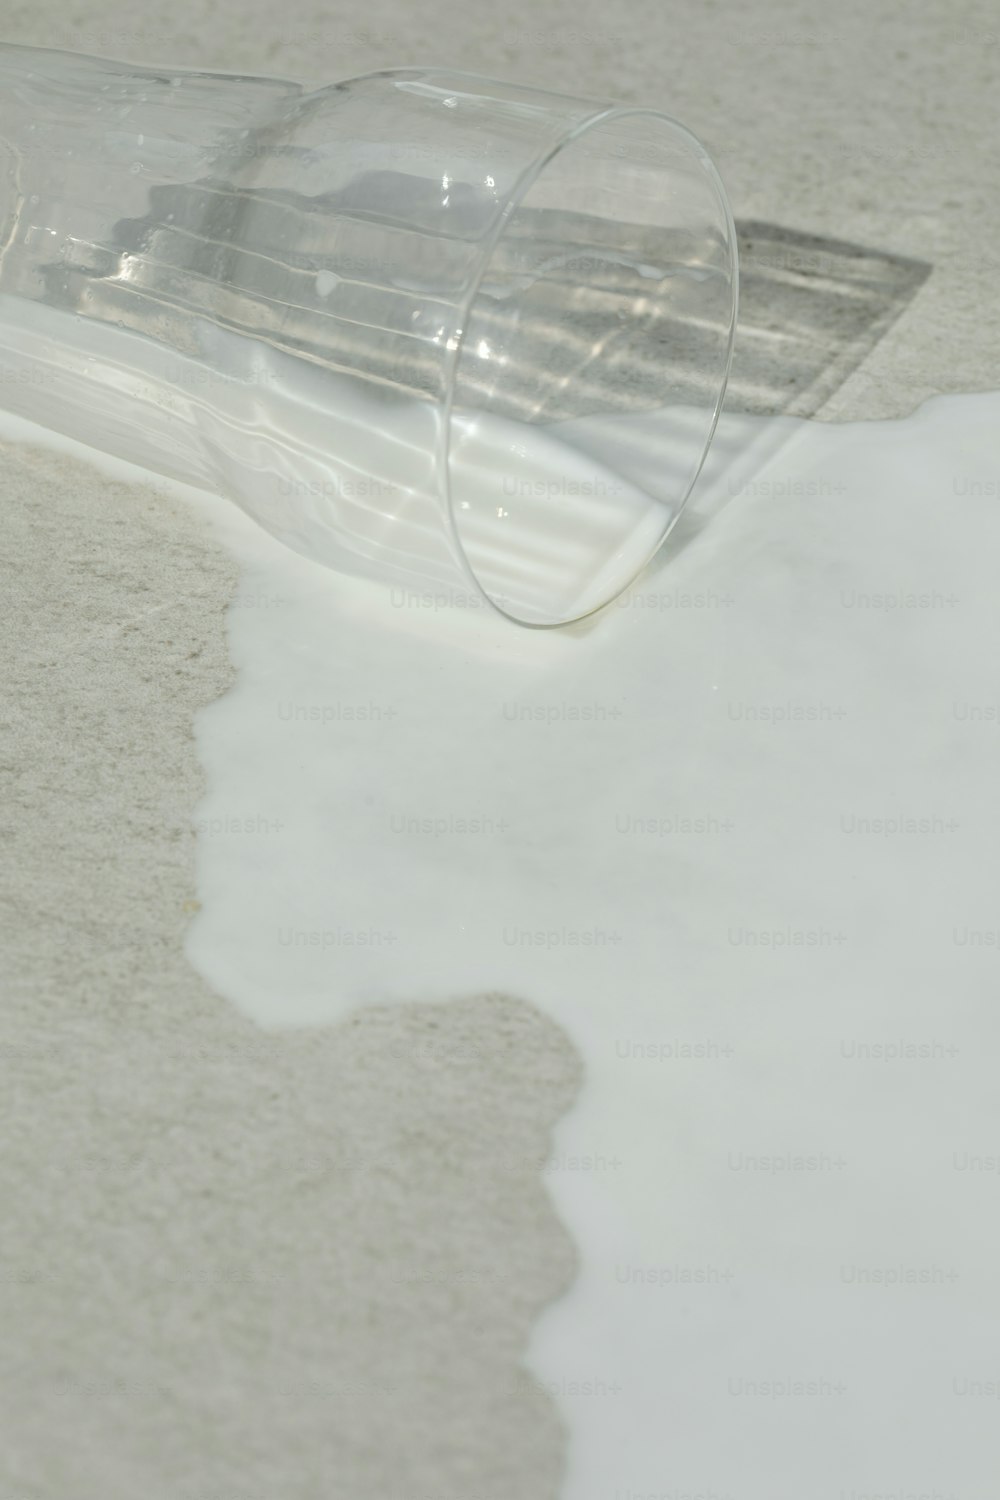 ein durchsichtiges Plastikrohr, das auf einem weißen Boden sitzt